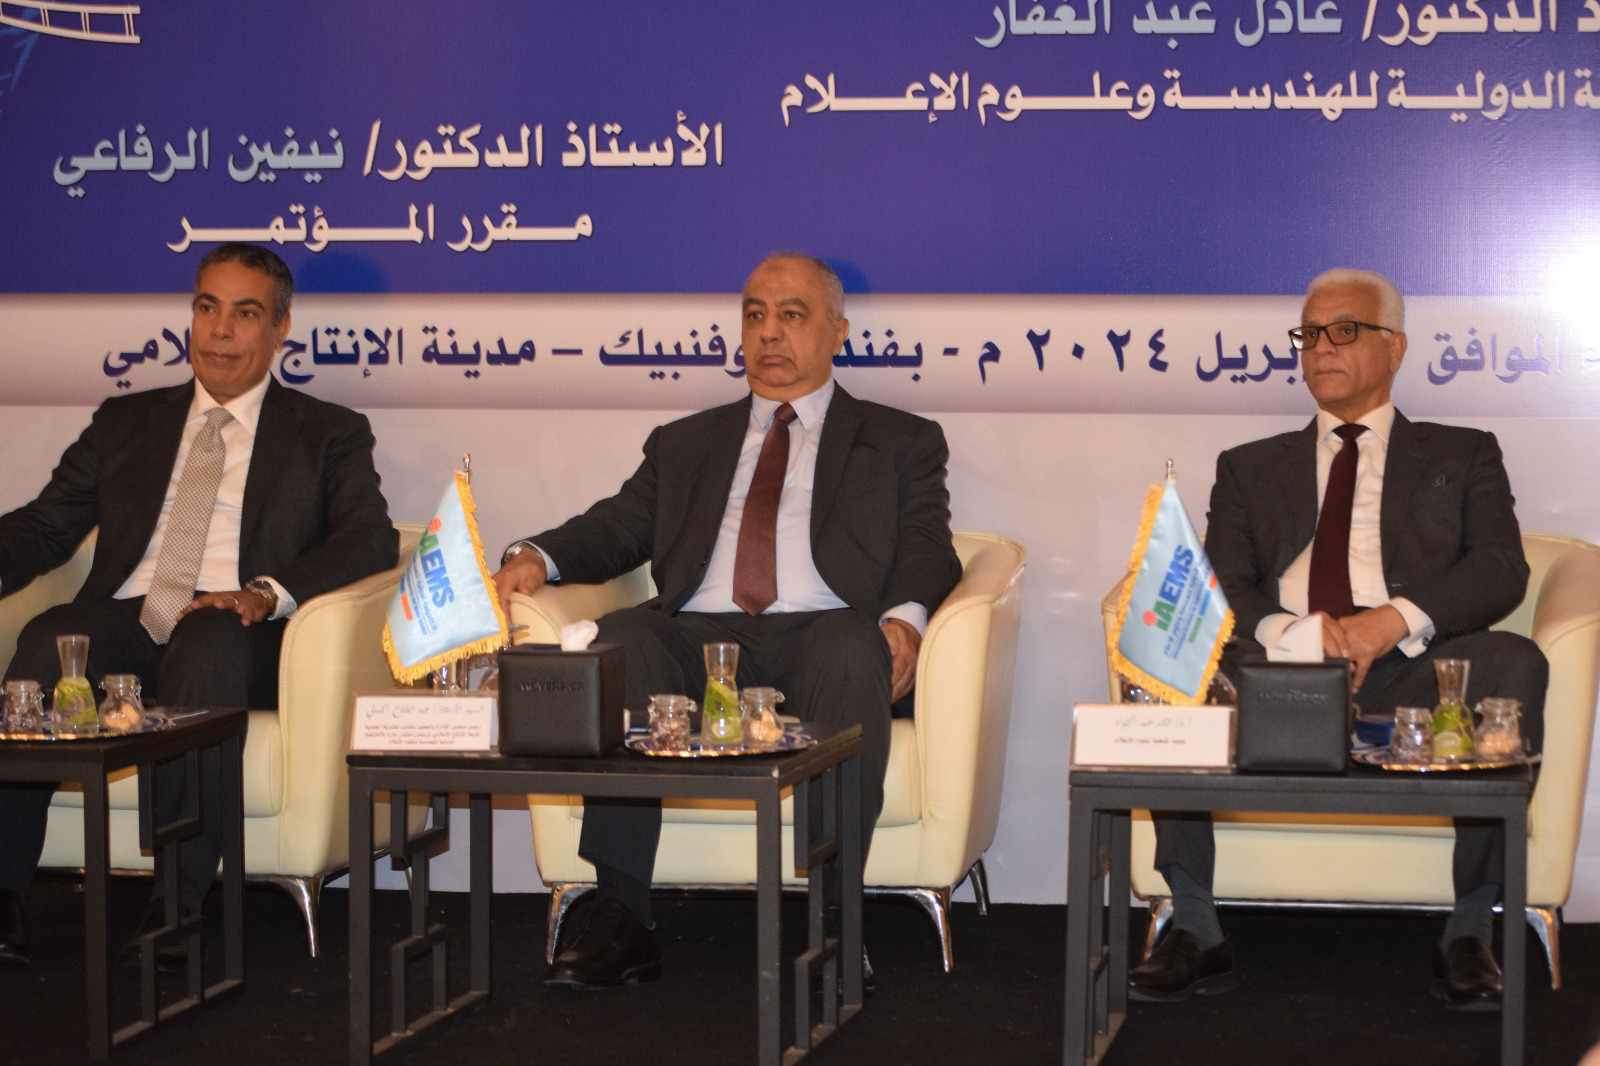 مؤتمر الإنتاج الإعلامي وقضايا المجتمع العربي (5)